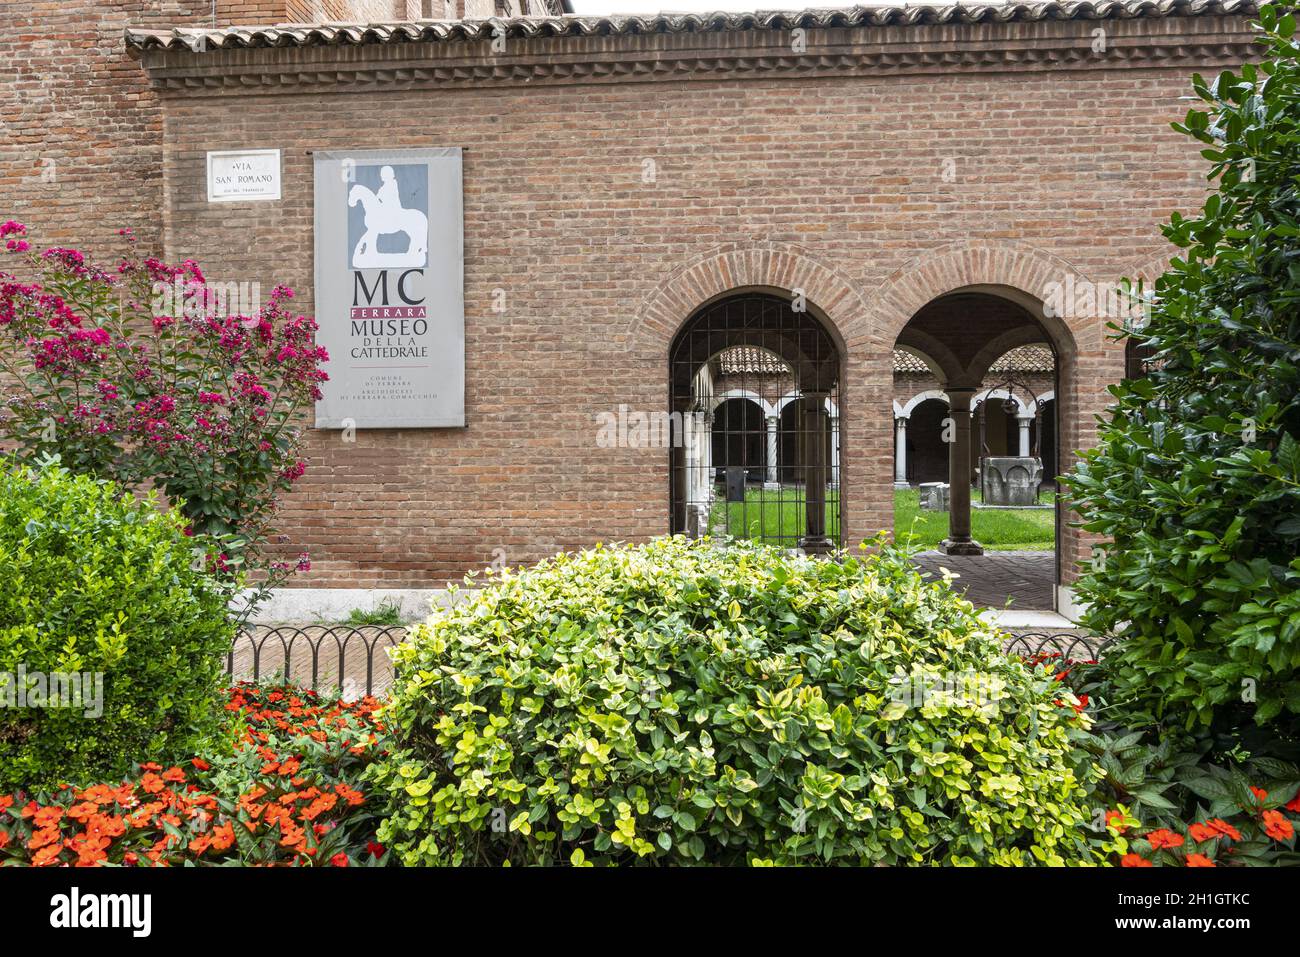 Ferrara, Italia. 6 agosto 2020. La vista esterna del Museo della Cattedrale buiulding Foto Stock